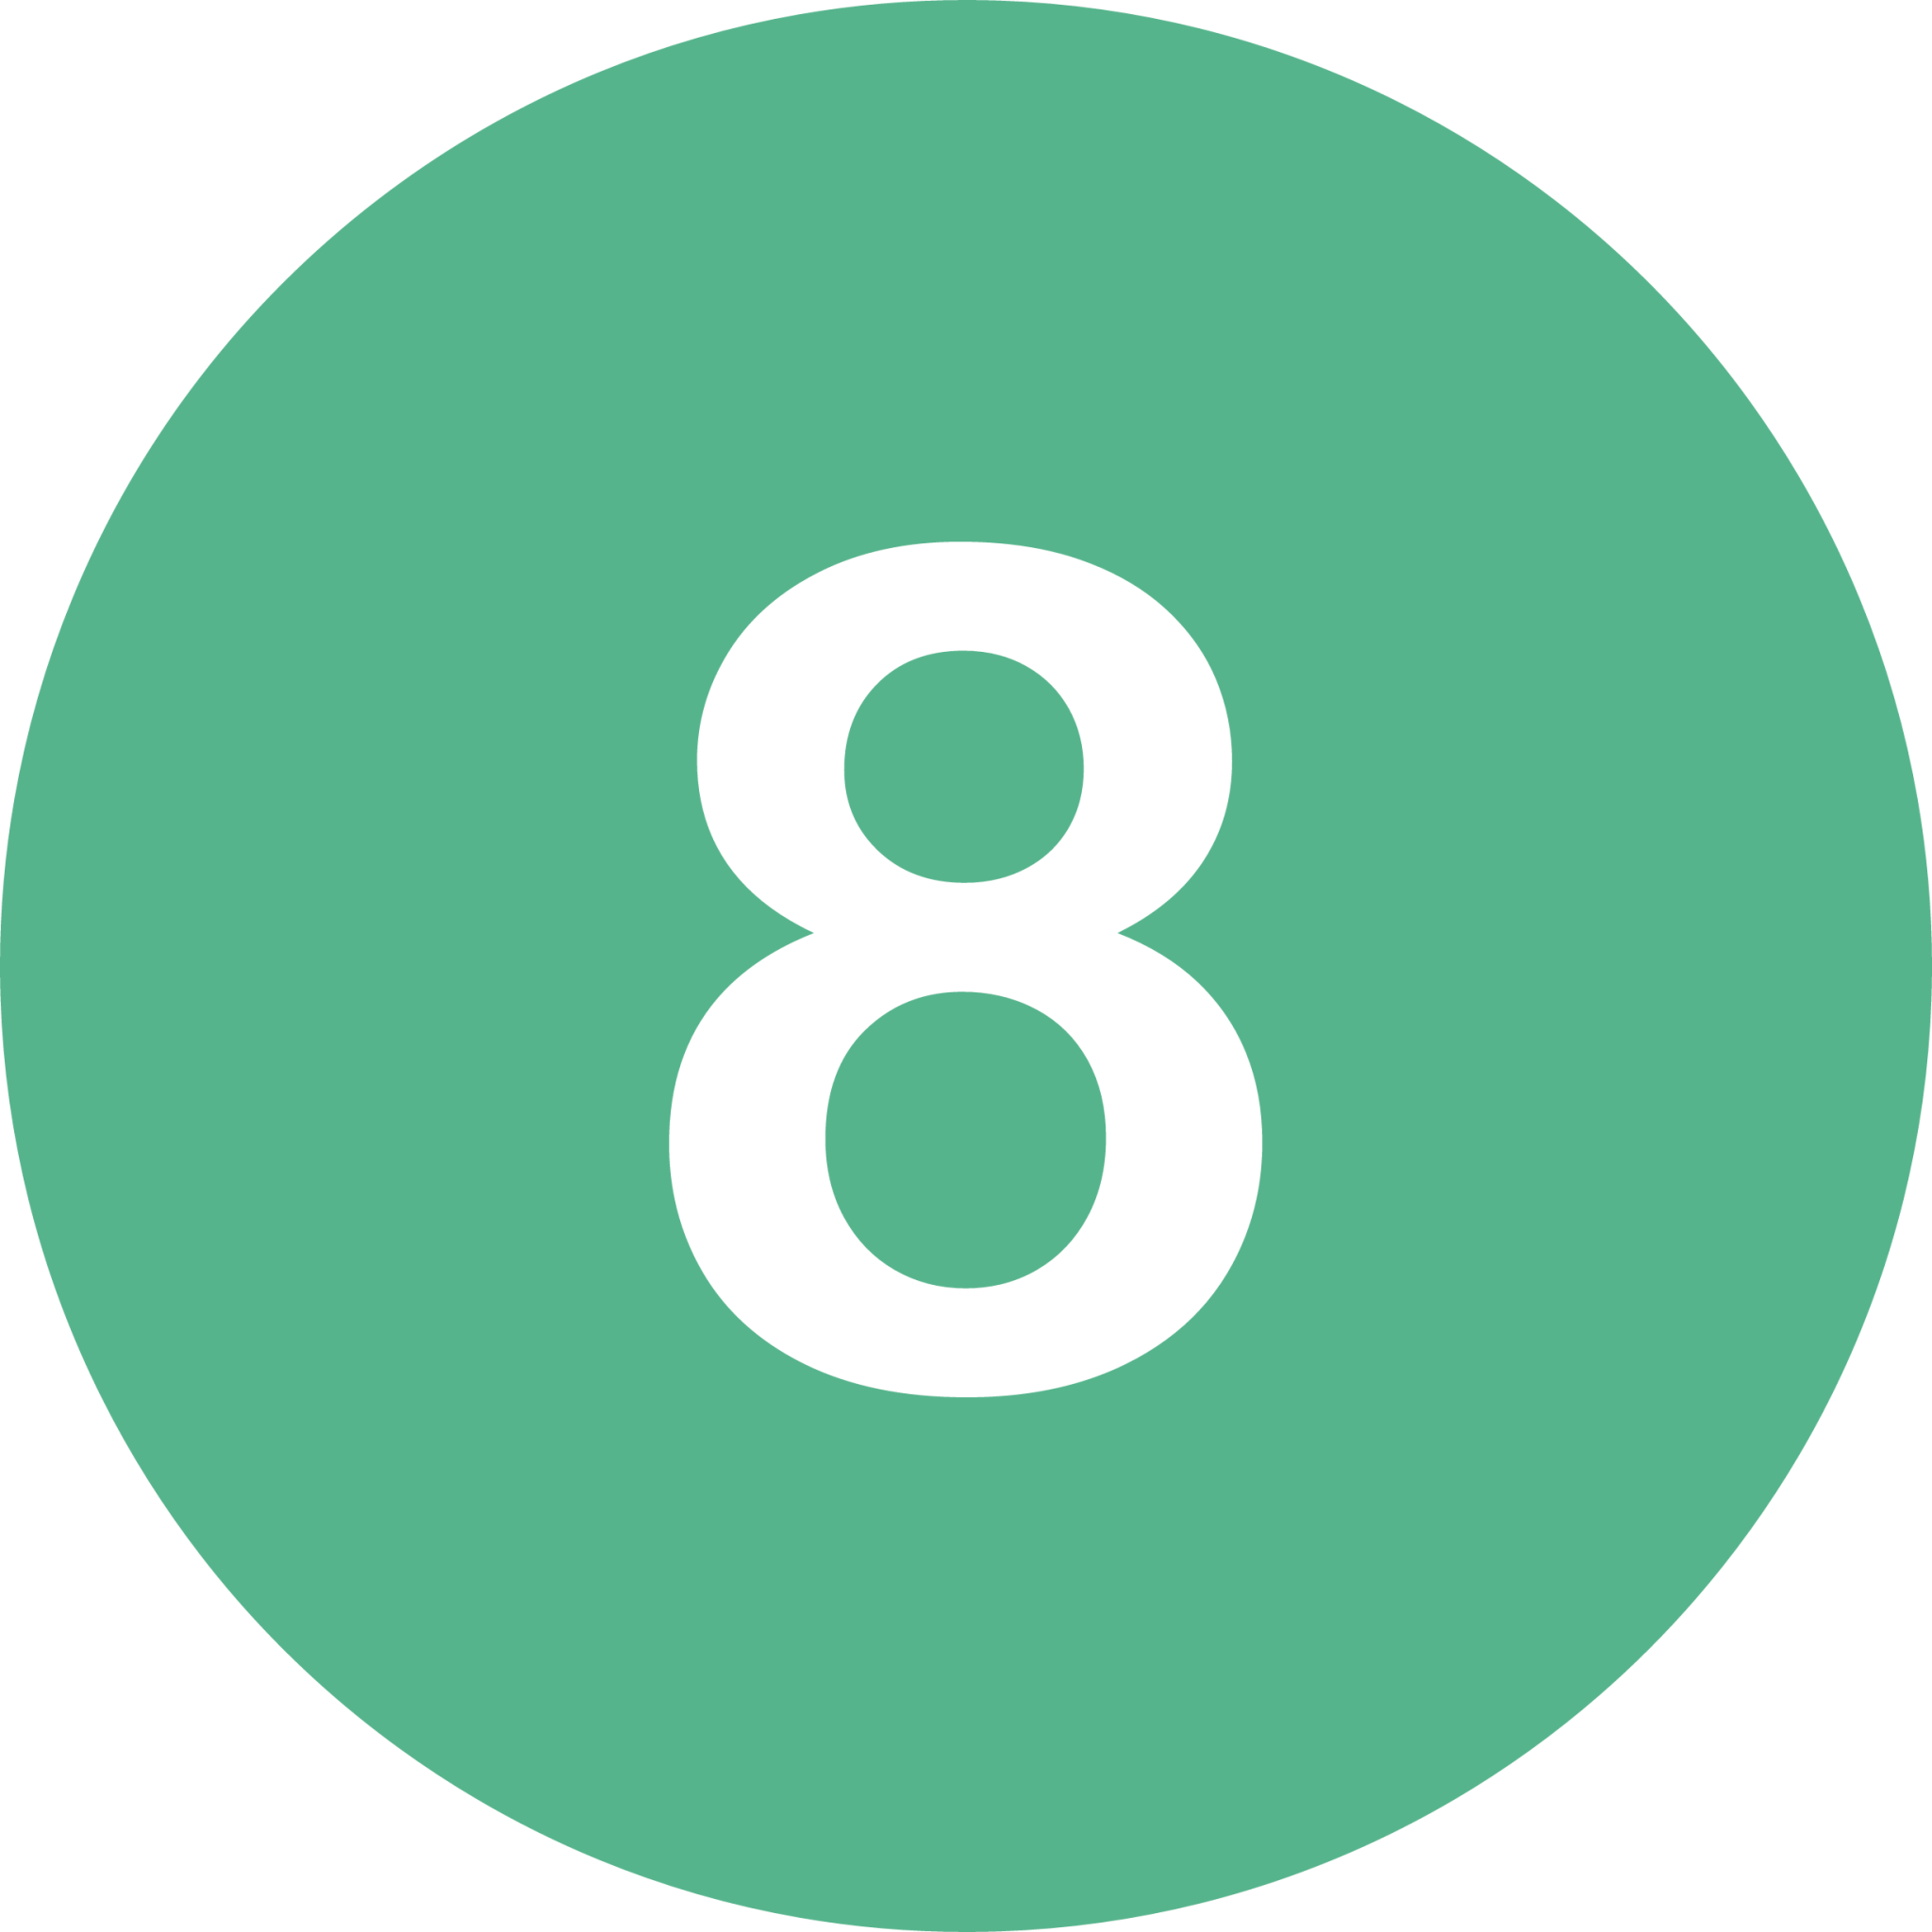 eight icon